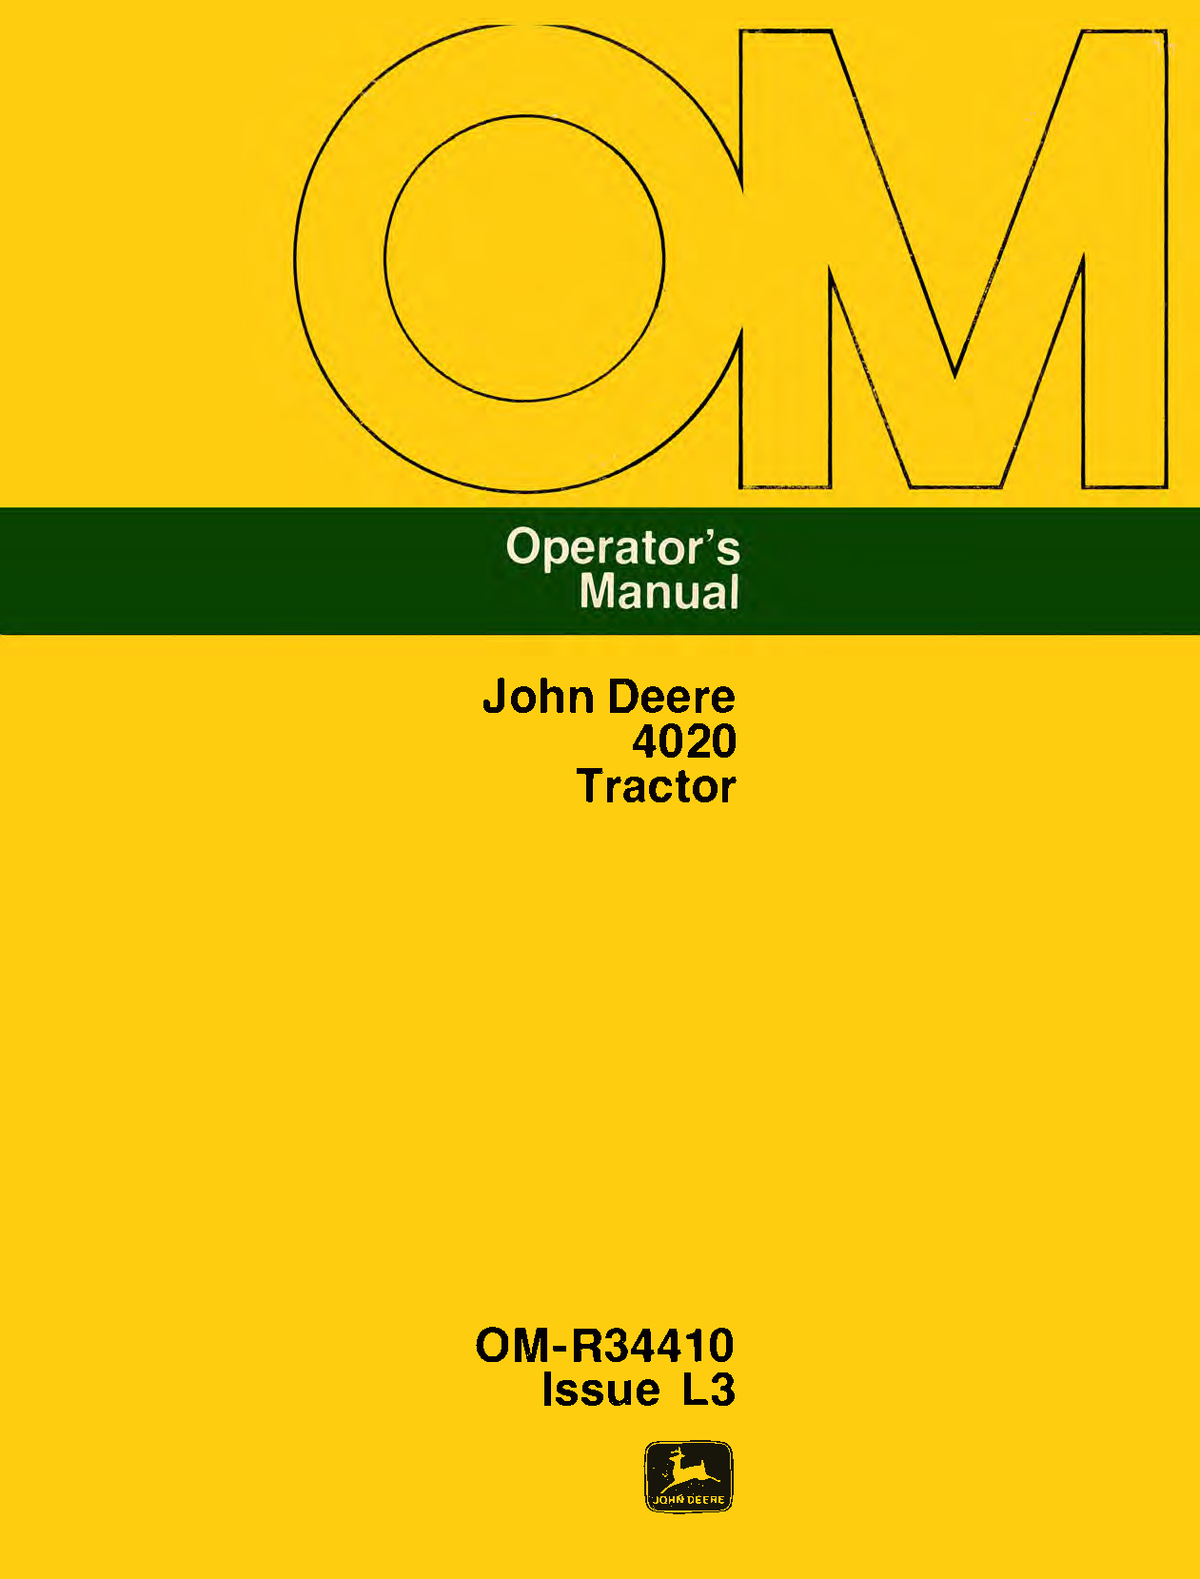 John Deere 4020 Tractor Operator's Manual / Owner's Manual